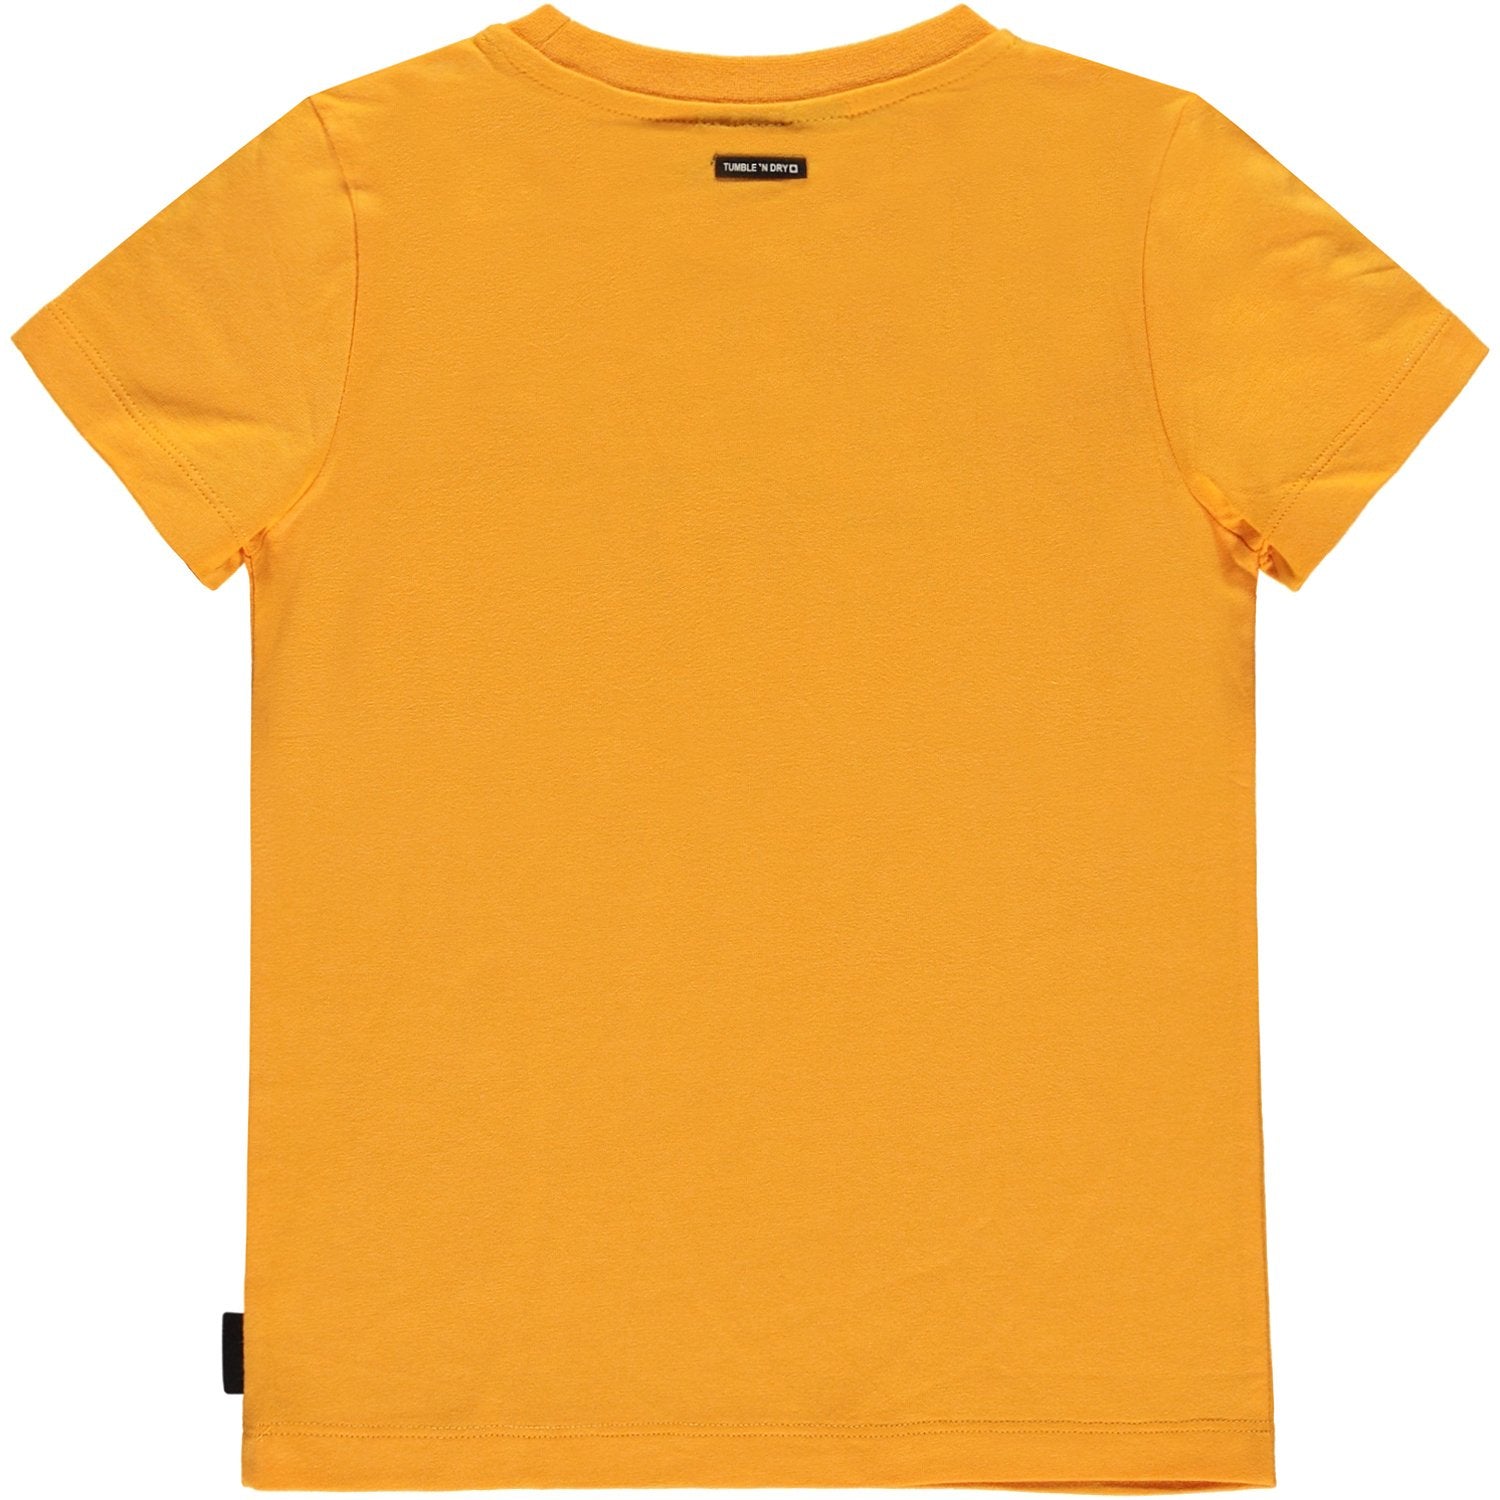 Jongens T-shirt Km O-hals van Tumble 'n Dry in de kleur Cadmium yellow in maat 128.